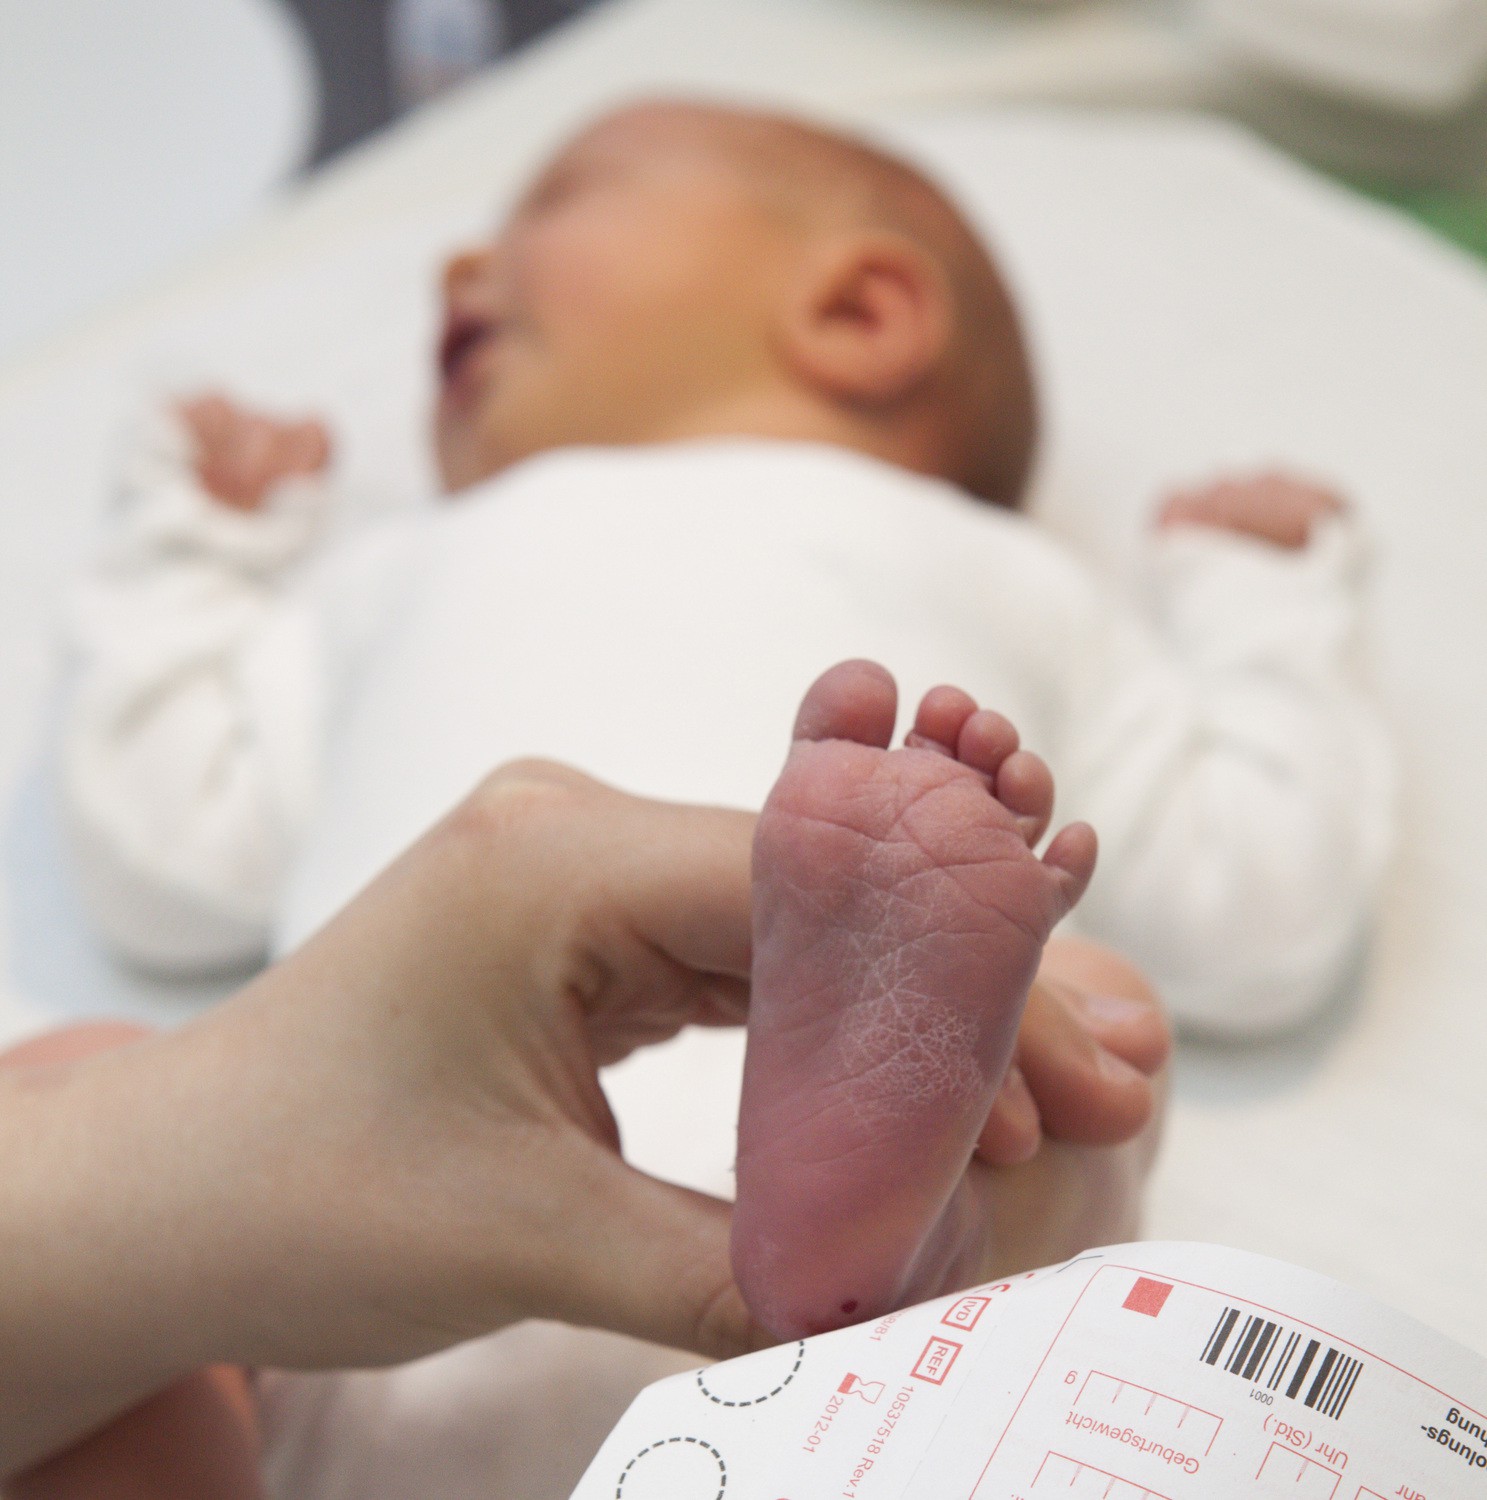 Experten des Uniklinikums Leipzig leiten die aktuelle Jahrestagung der DGNS, bei der auch über die Erweiterung des Neugeborenenscreenings - hier eine Aufnahme aus dem UKL- berichtet wird.